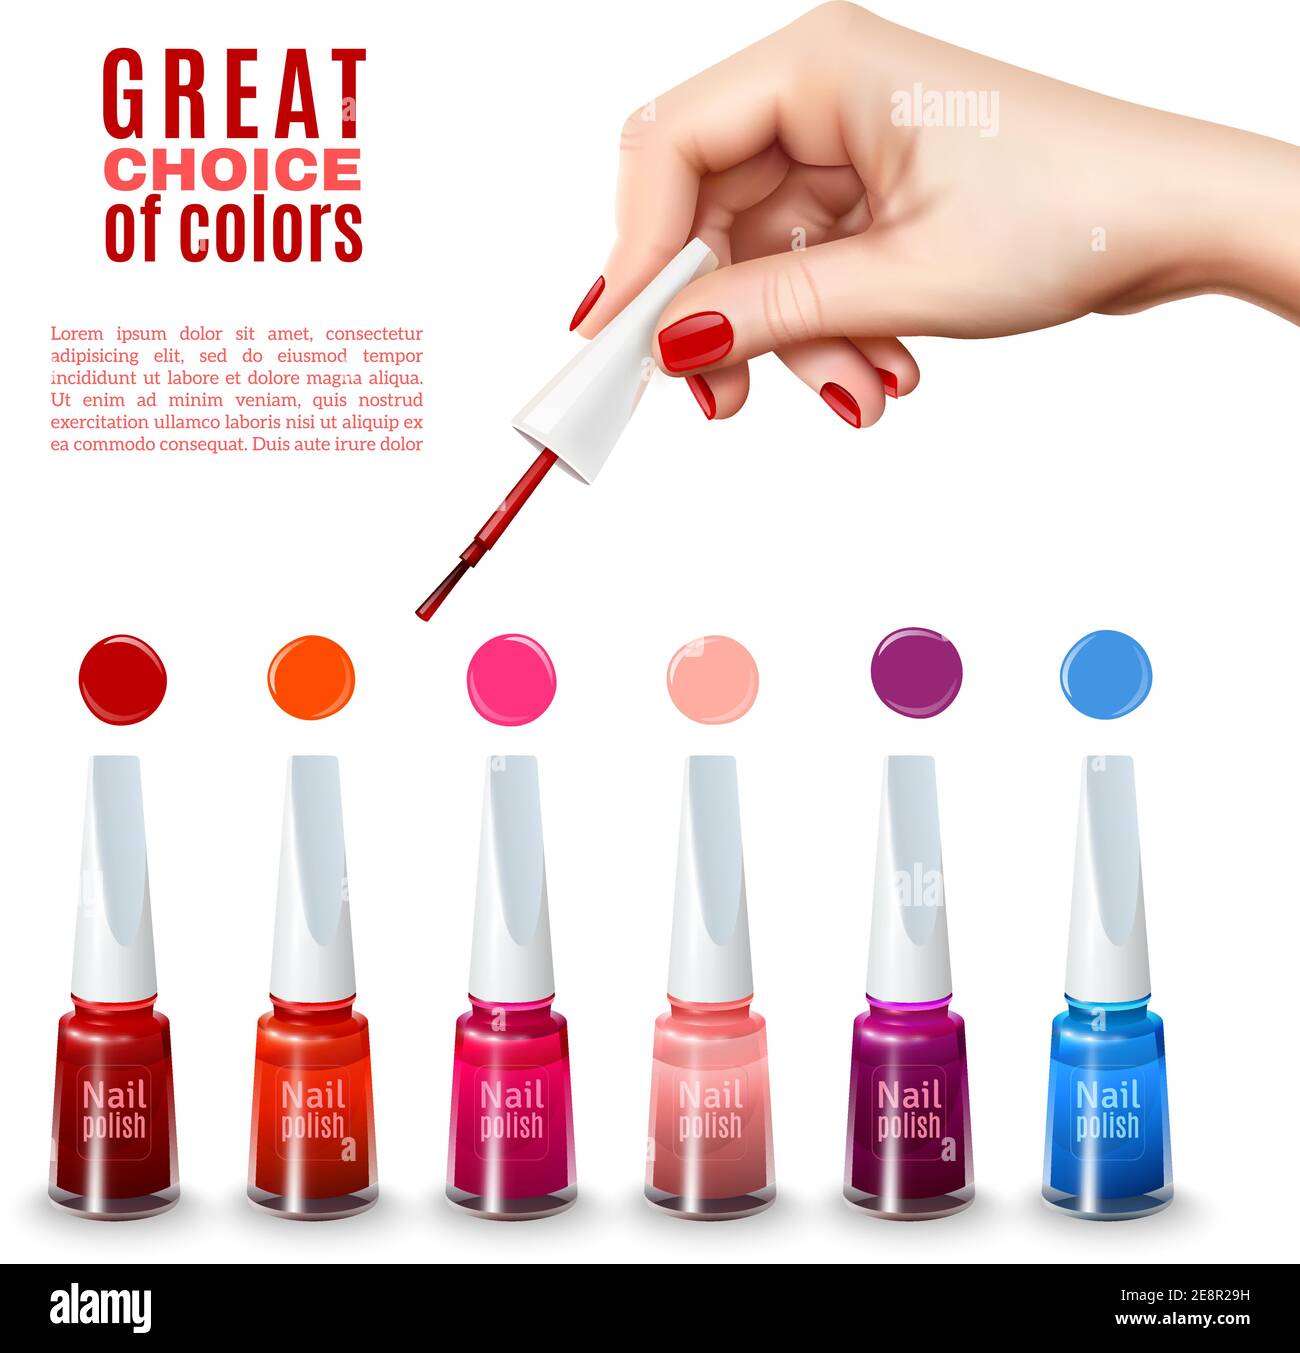 Beste Wahl der neuen Farbtöne Nagellack Farben mit schön Hand halten Pinsel  Werbung Poster realistische Vektor-Illustration Stock-Vektorgrafik - Alamy